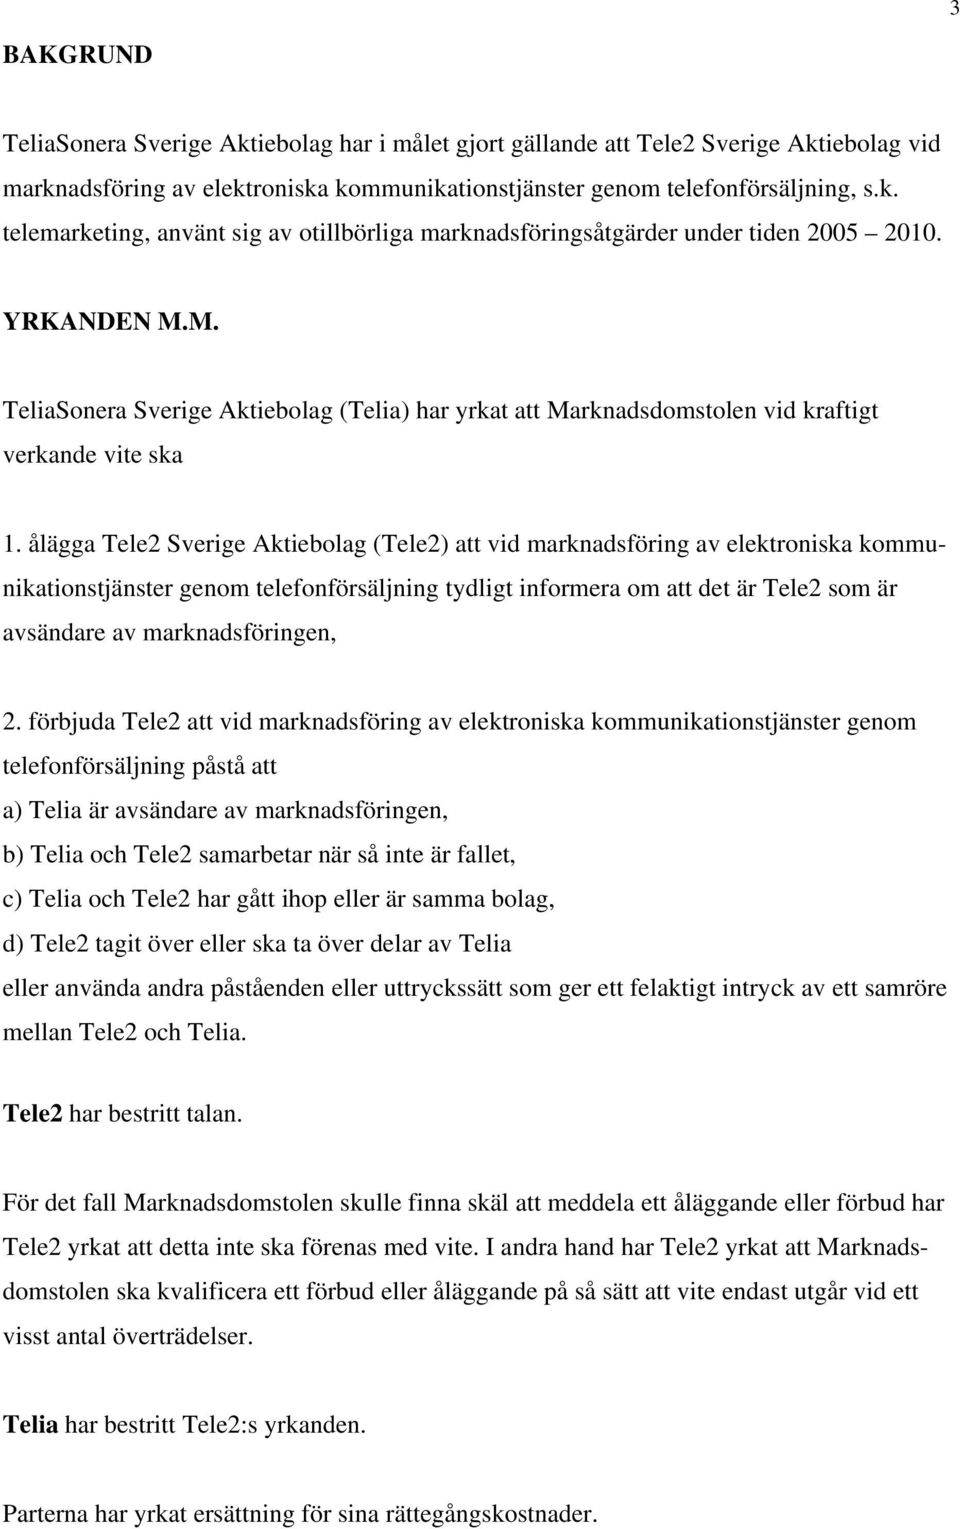 ålägga Tele2 Sverige Aktiebolag (Tele2) att vid marknadsföring av elektroniska kommunikationstjänster genom telefonförsäljning tydligt informera om att det är Tele2 som är avsändare av